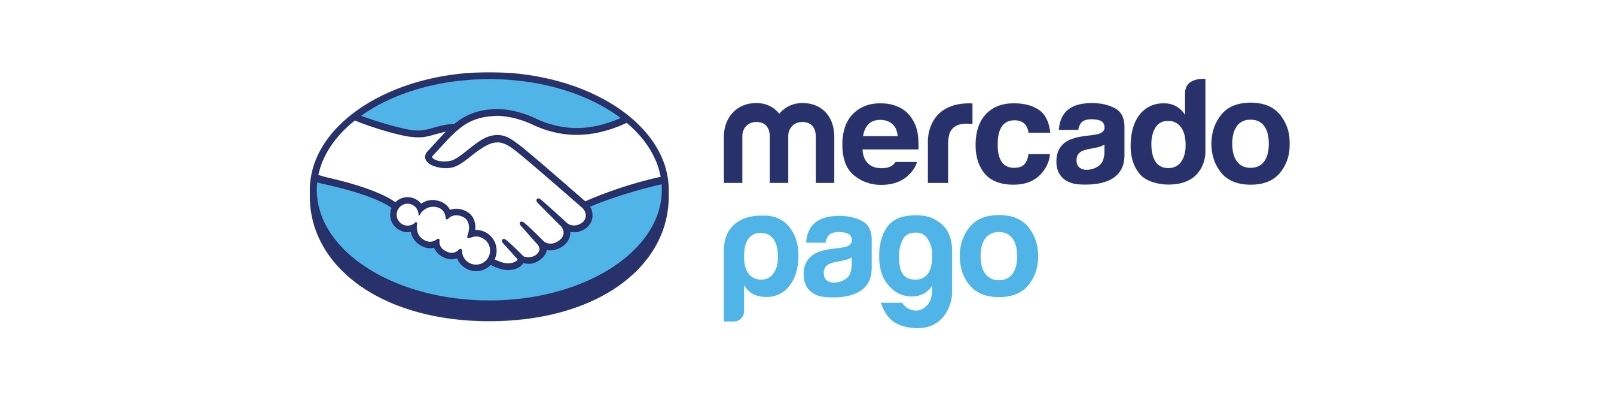 WhatsApp Mercado Pago: Chat, E-mail, Fale Conosco!